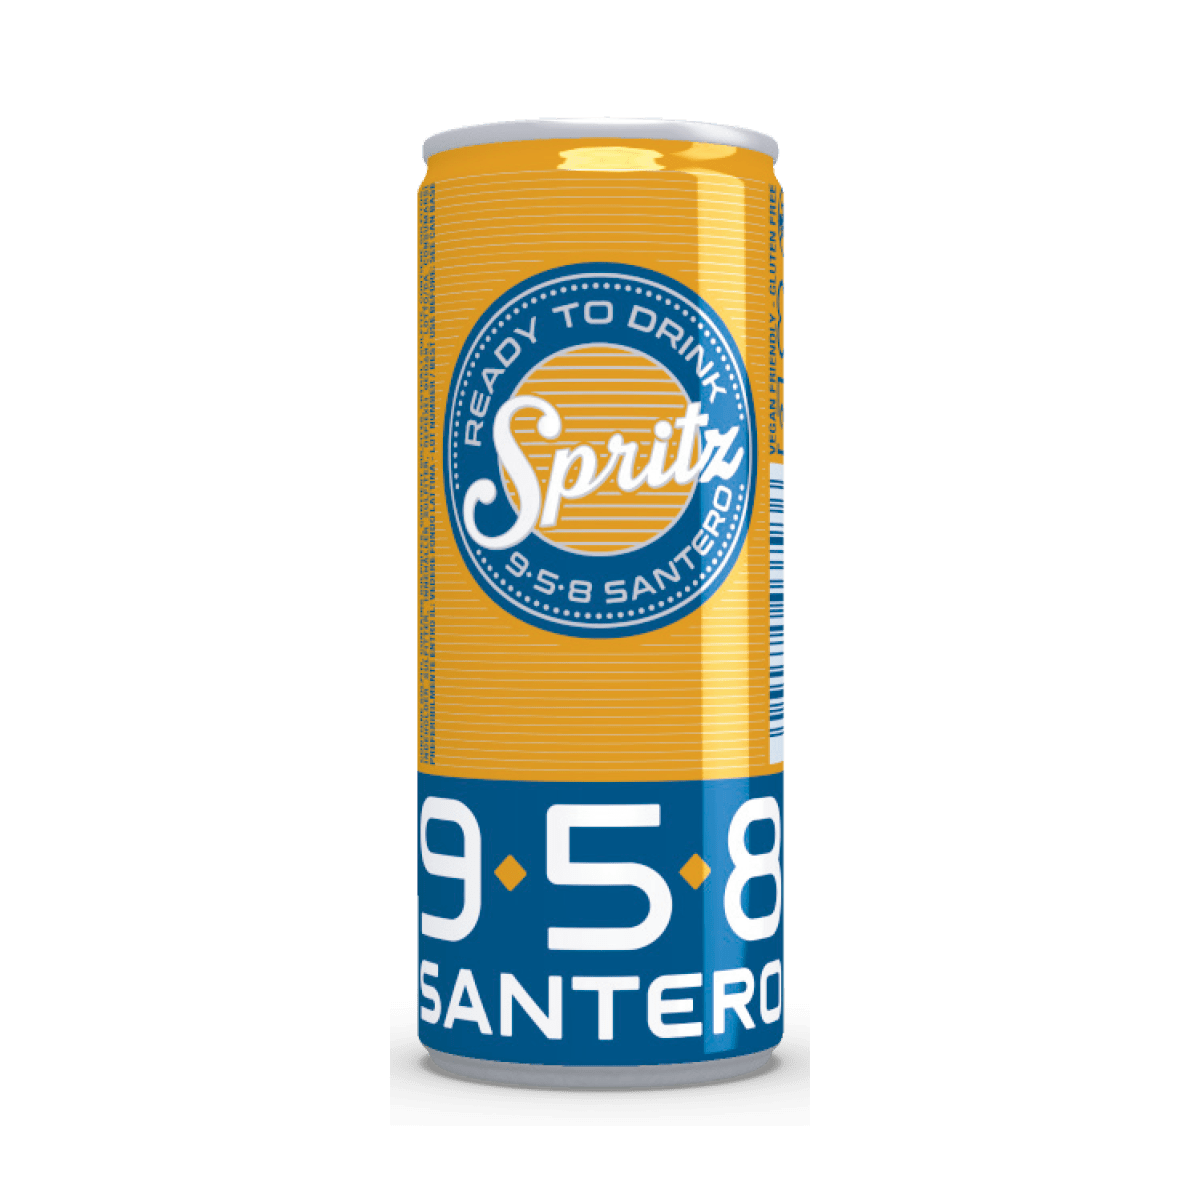 E-shop 958 Santero Ready To Drink Spritz